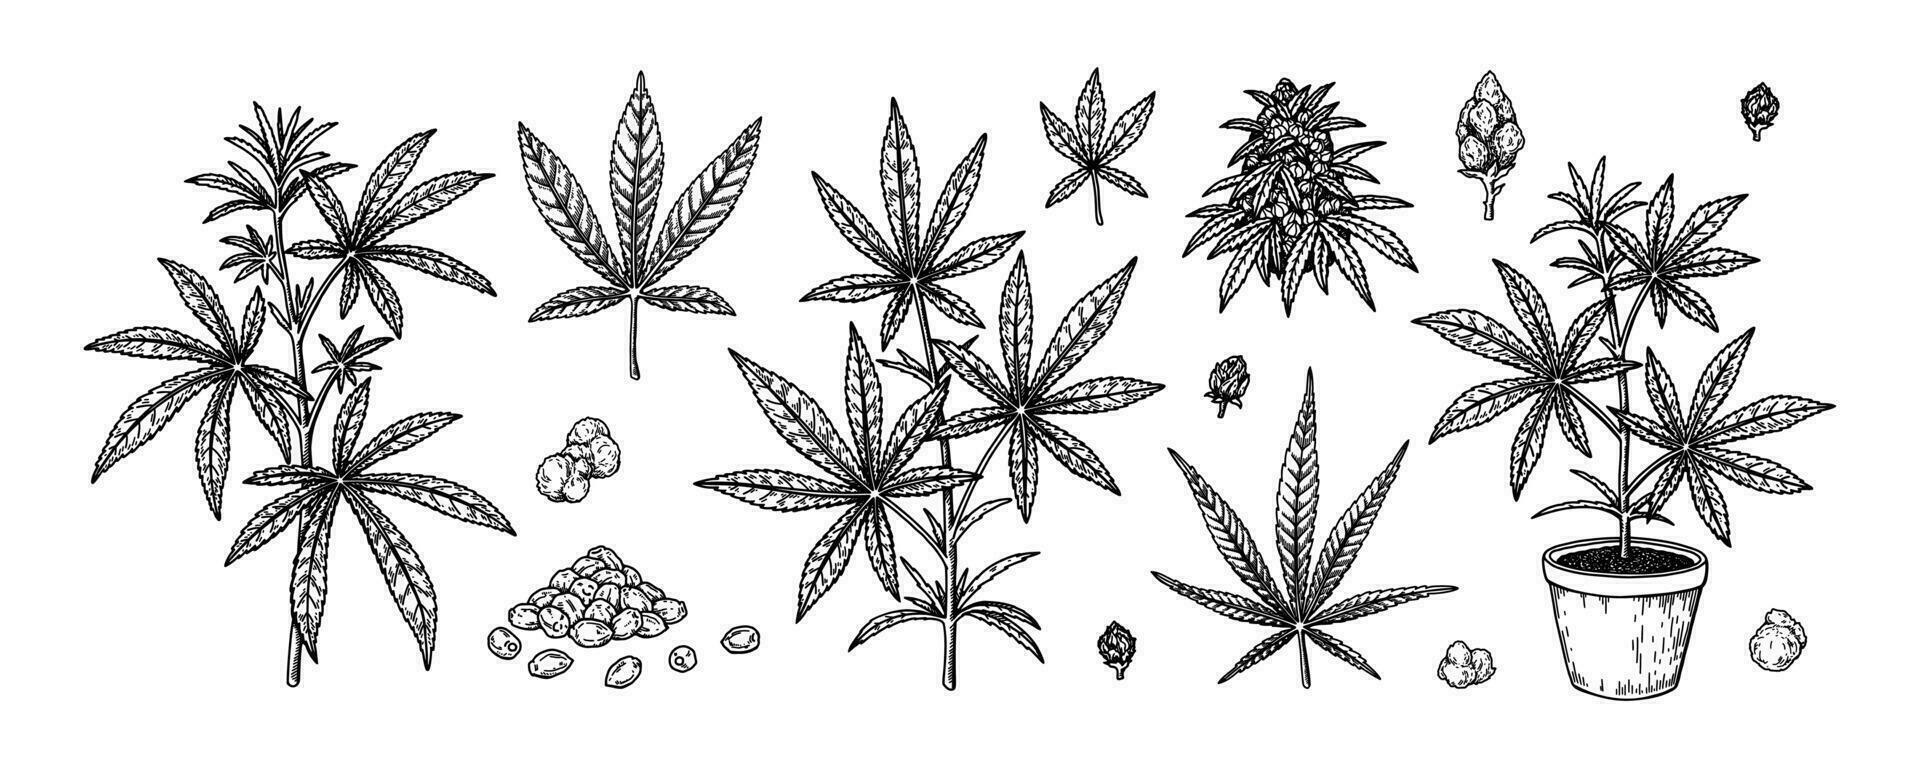 canapa pianta, rami, le foglie e semi. impostato di mano disegnato marijuana design elementi. vettore illustrazione nel schizzo stile